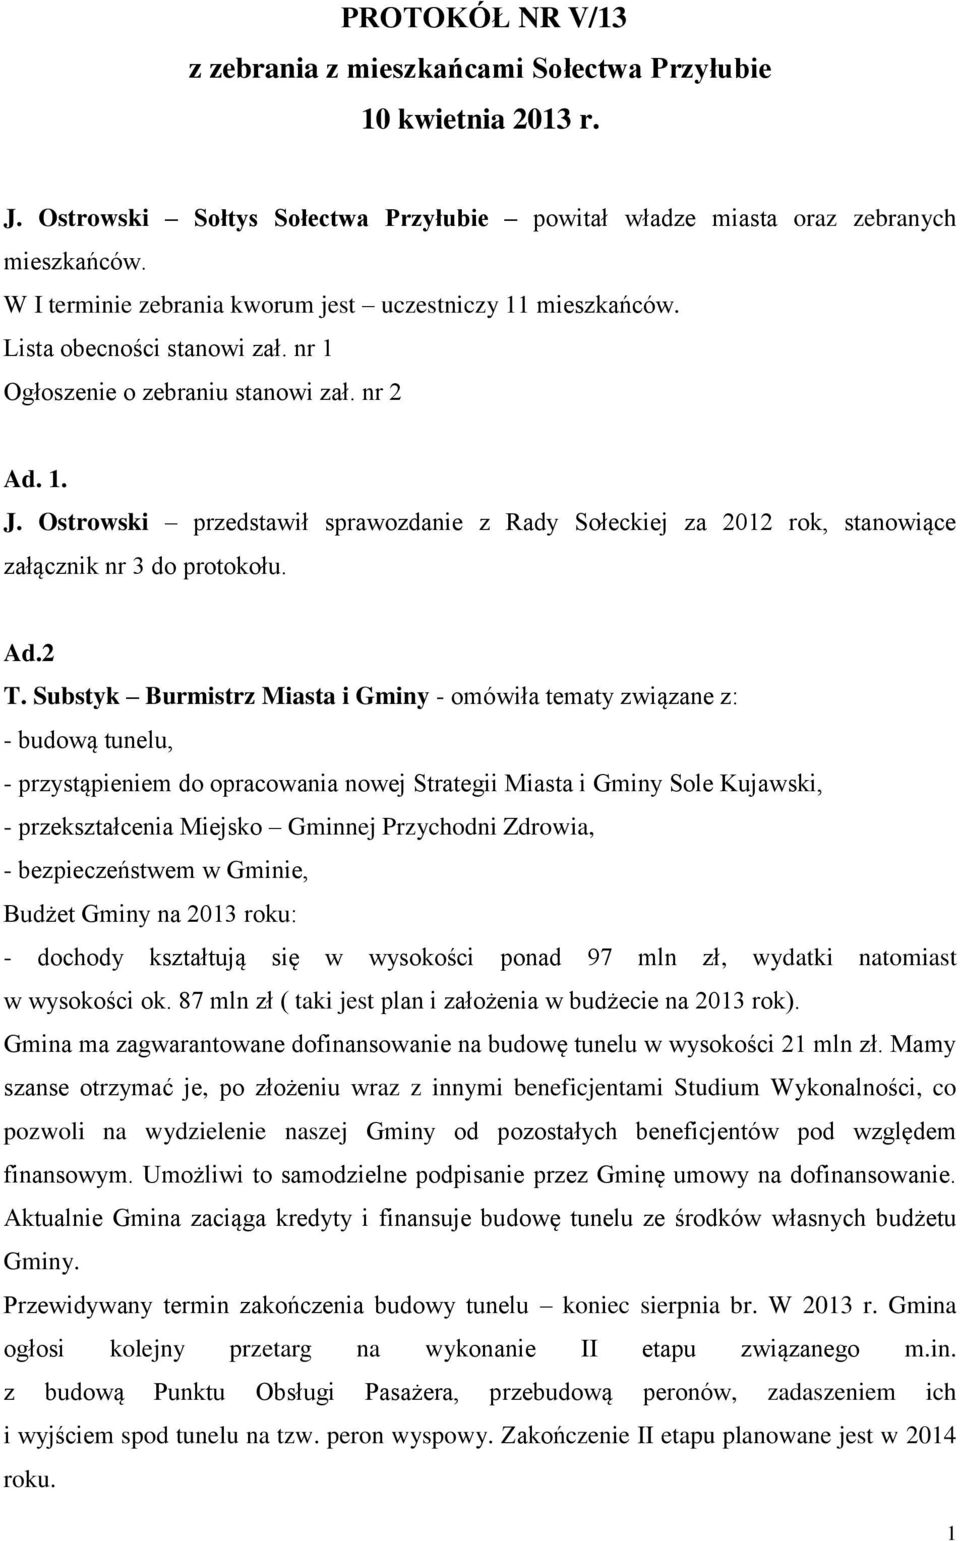 Ostrowski przedstawił sprawozdanie z Rady Sołeckiej za 2012 rok, stanowiące załącznik nr 3 do protokołu. Ad.2 T.